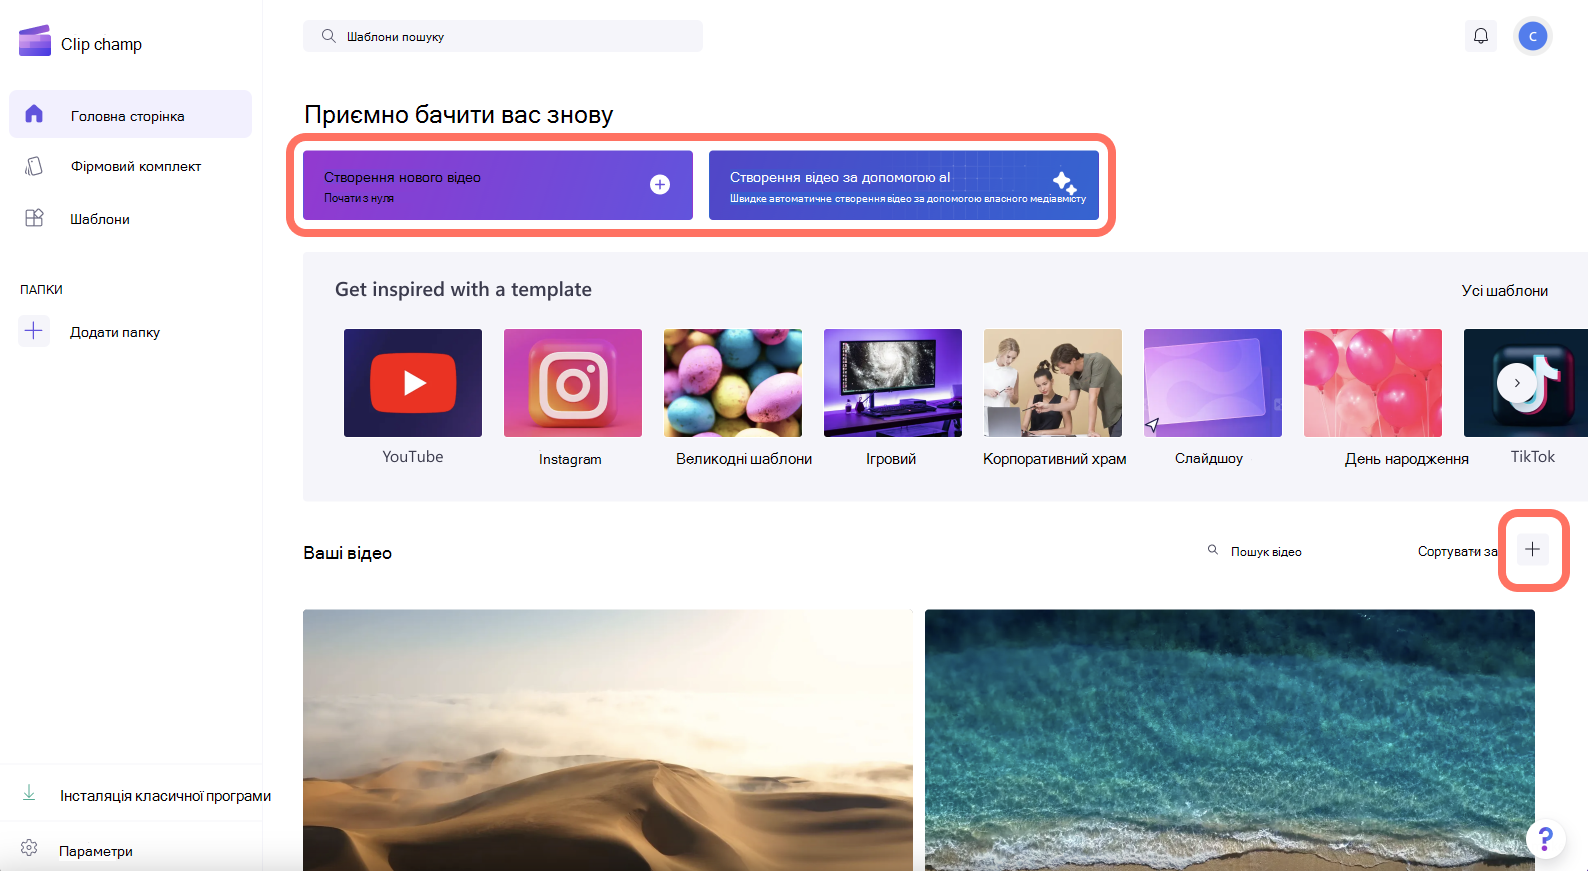 Зображення кнопки "Створити відео" у верхньому правому куті екрана.